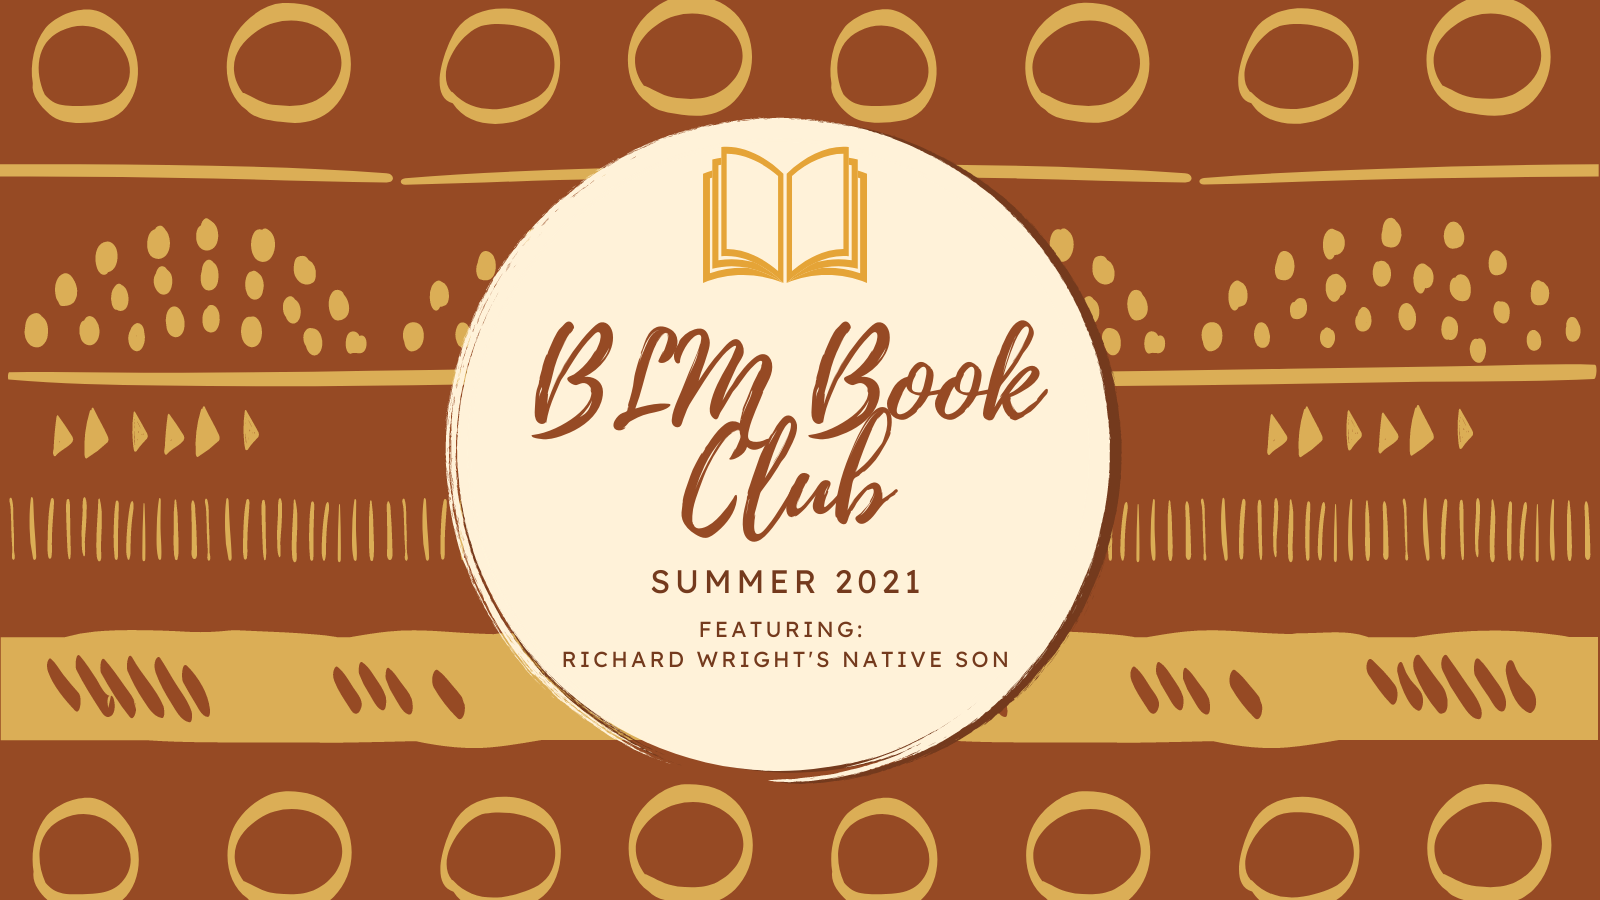 BLM Book Club Summer 2021